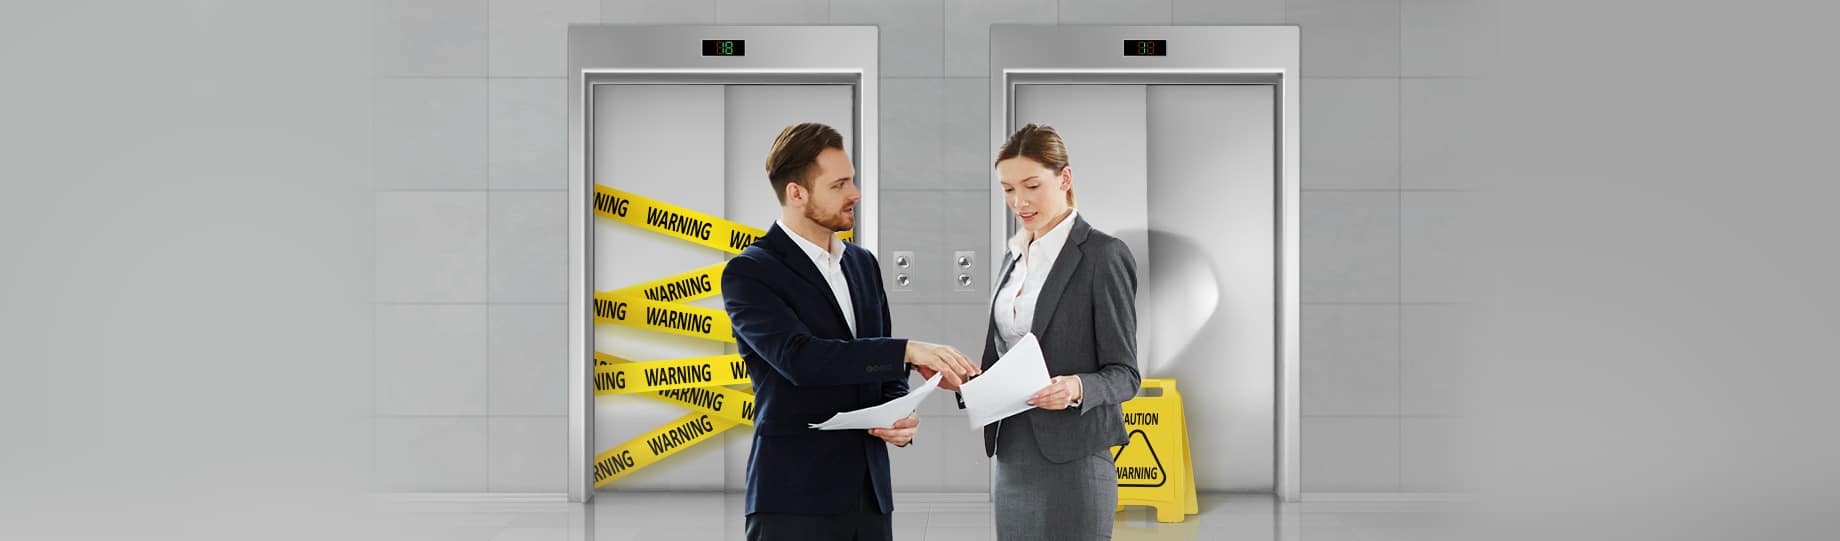 contrate-a-empresa-certa-para-conservação-dos-elevadores